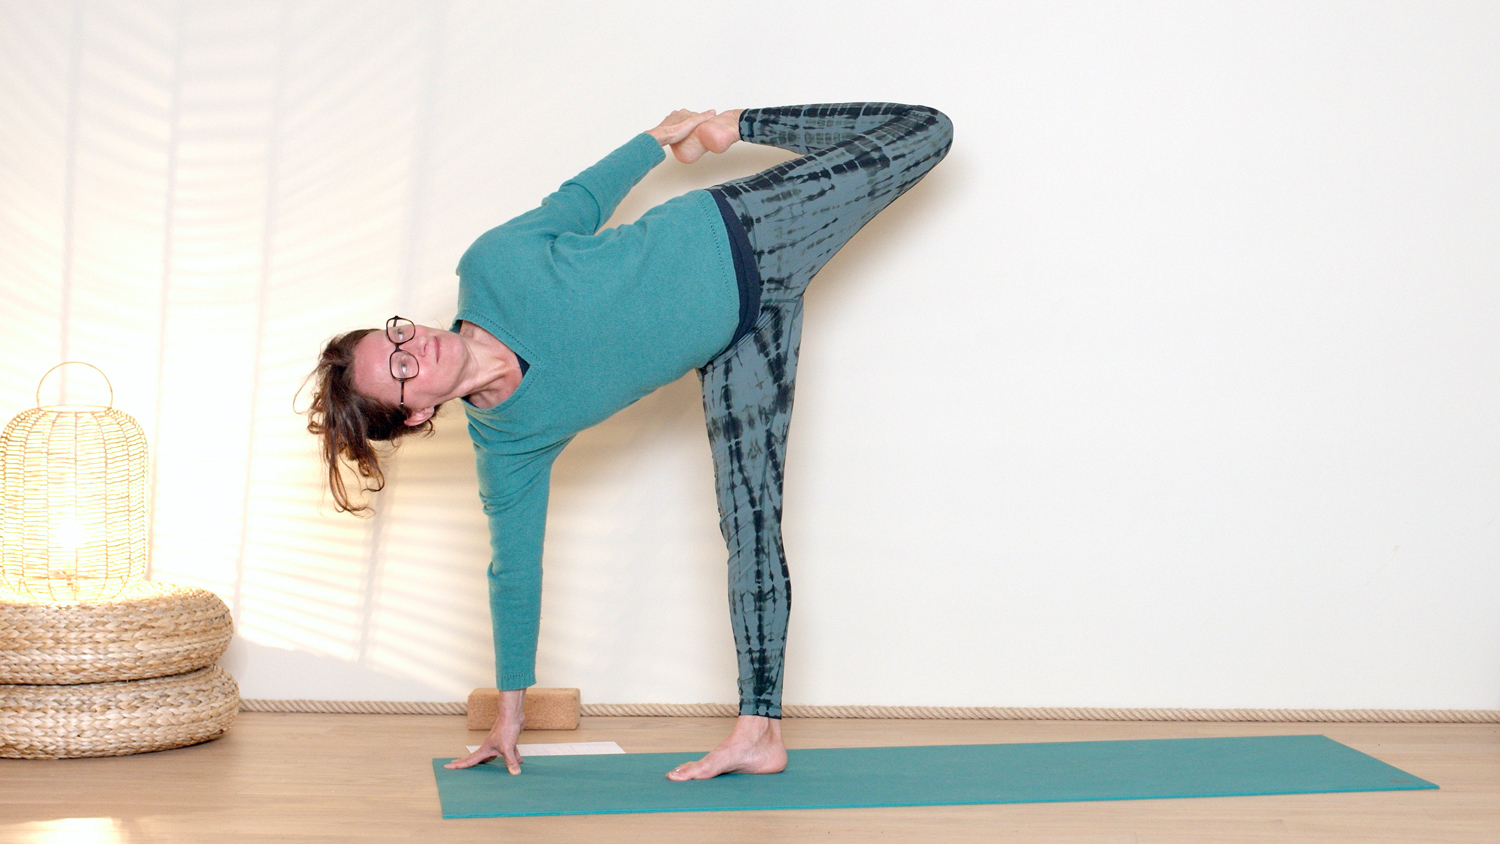 Yoga & Énergie : Expansion | Cours de yoga en ligne avec Delphine Denis | Hatha Yoga dynamique